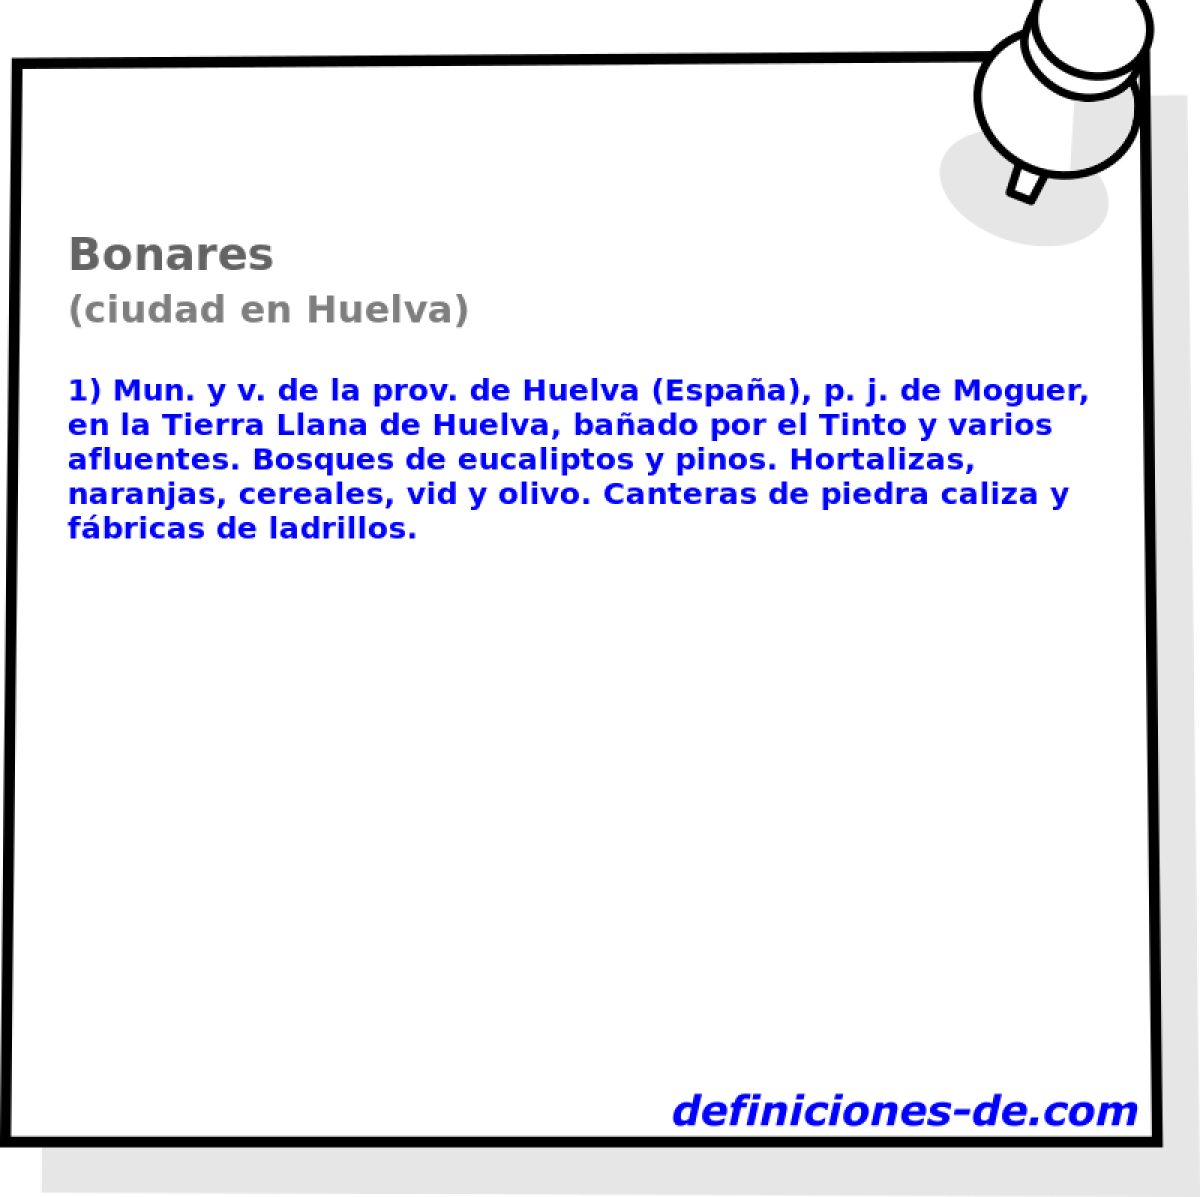 Bonares (ciudad en Huelva)